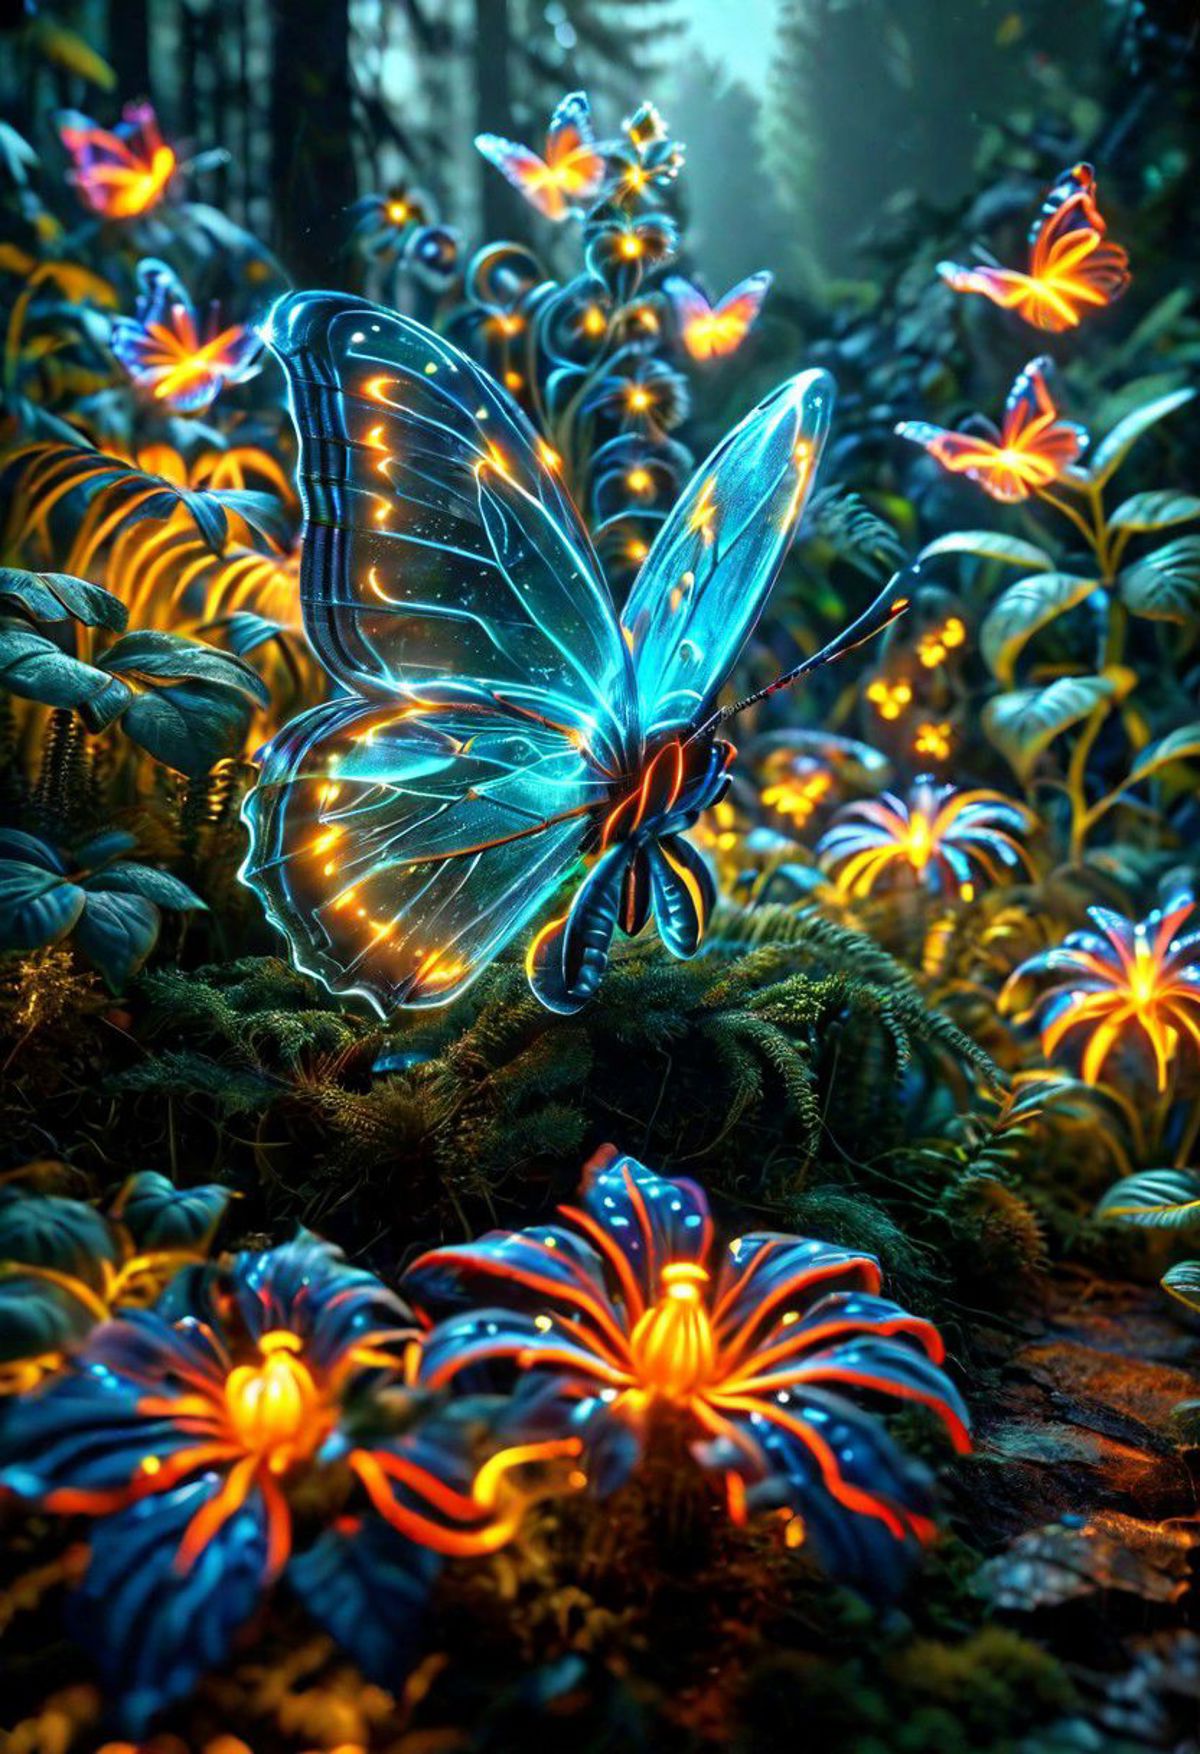 Bio-Luminescence image by thatCreepyGuy